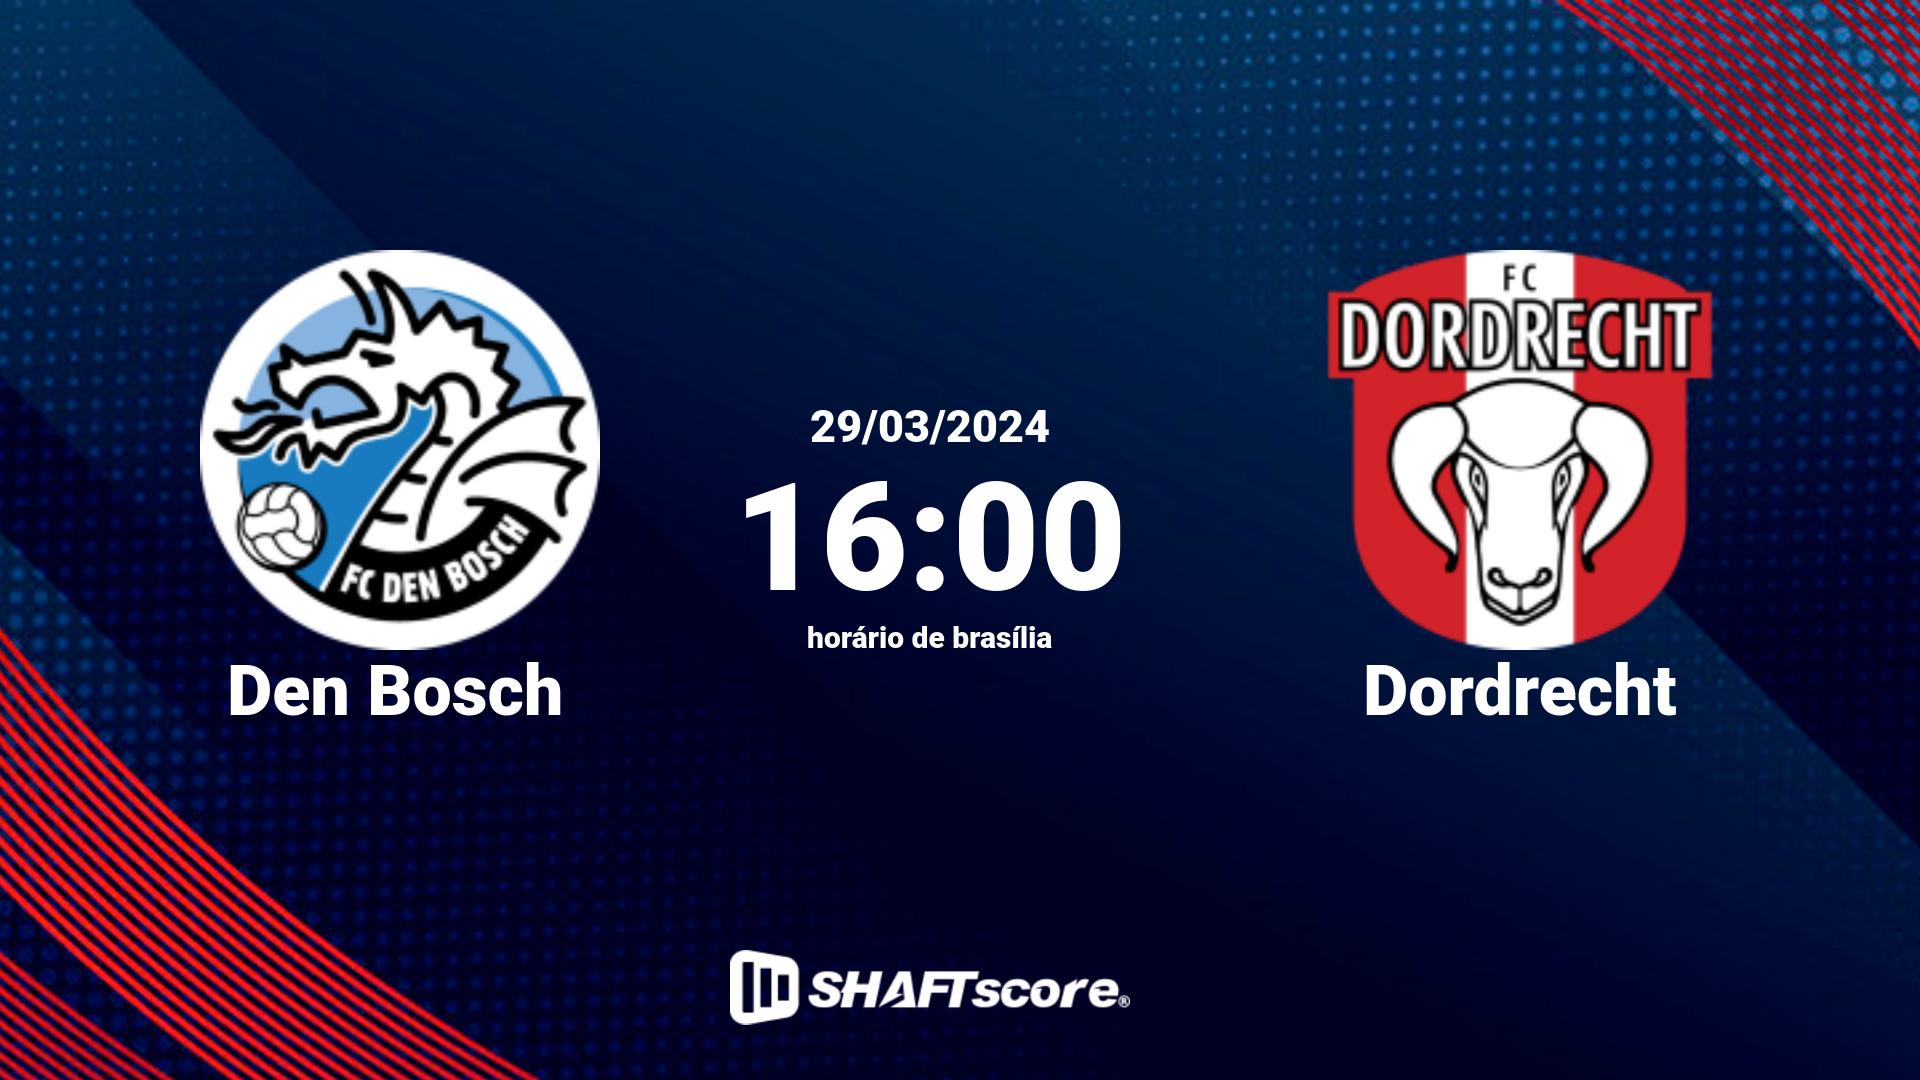 Estatísticas do jogo Den Bosch vs Dordrecht 29.03 16:00